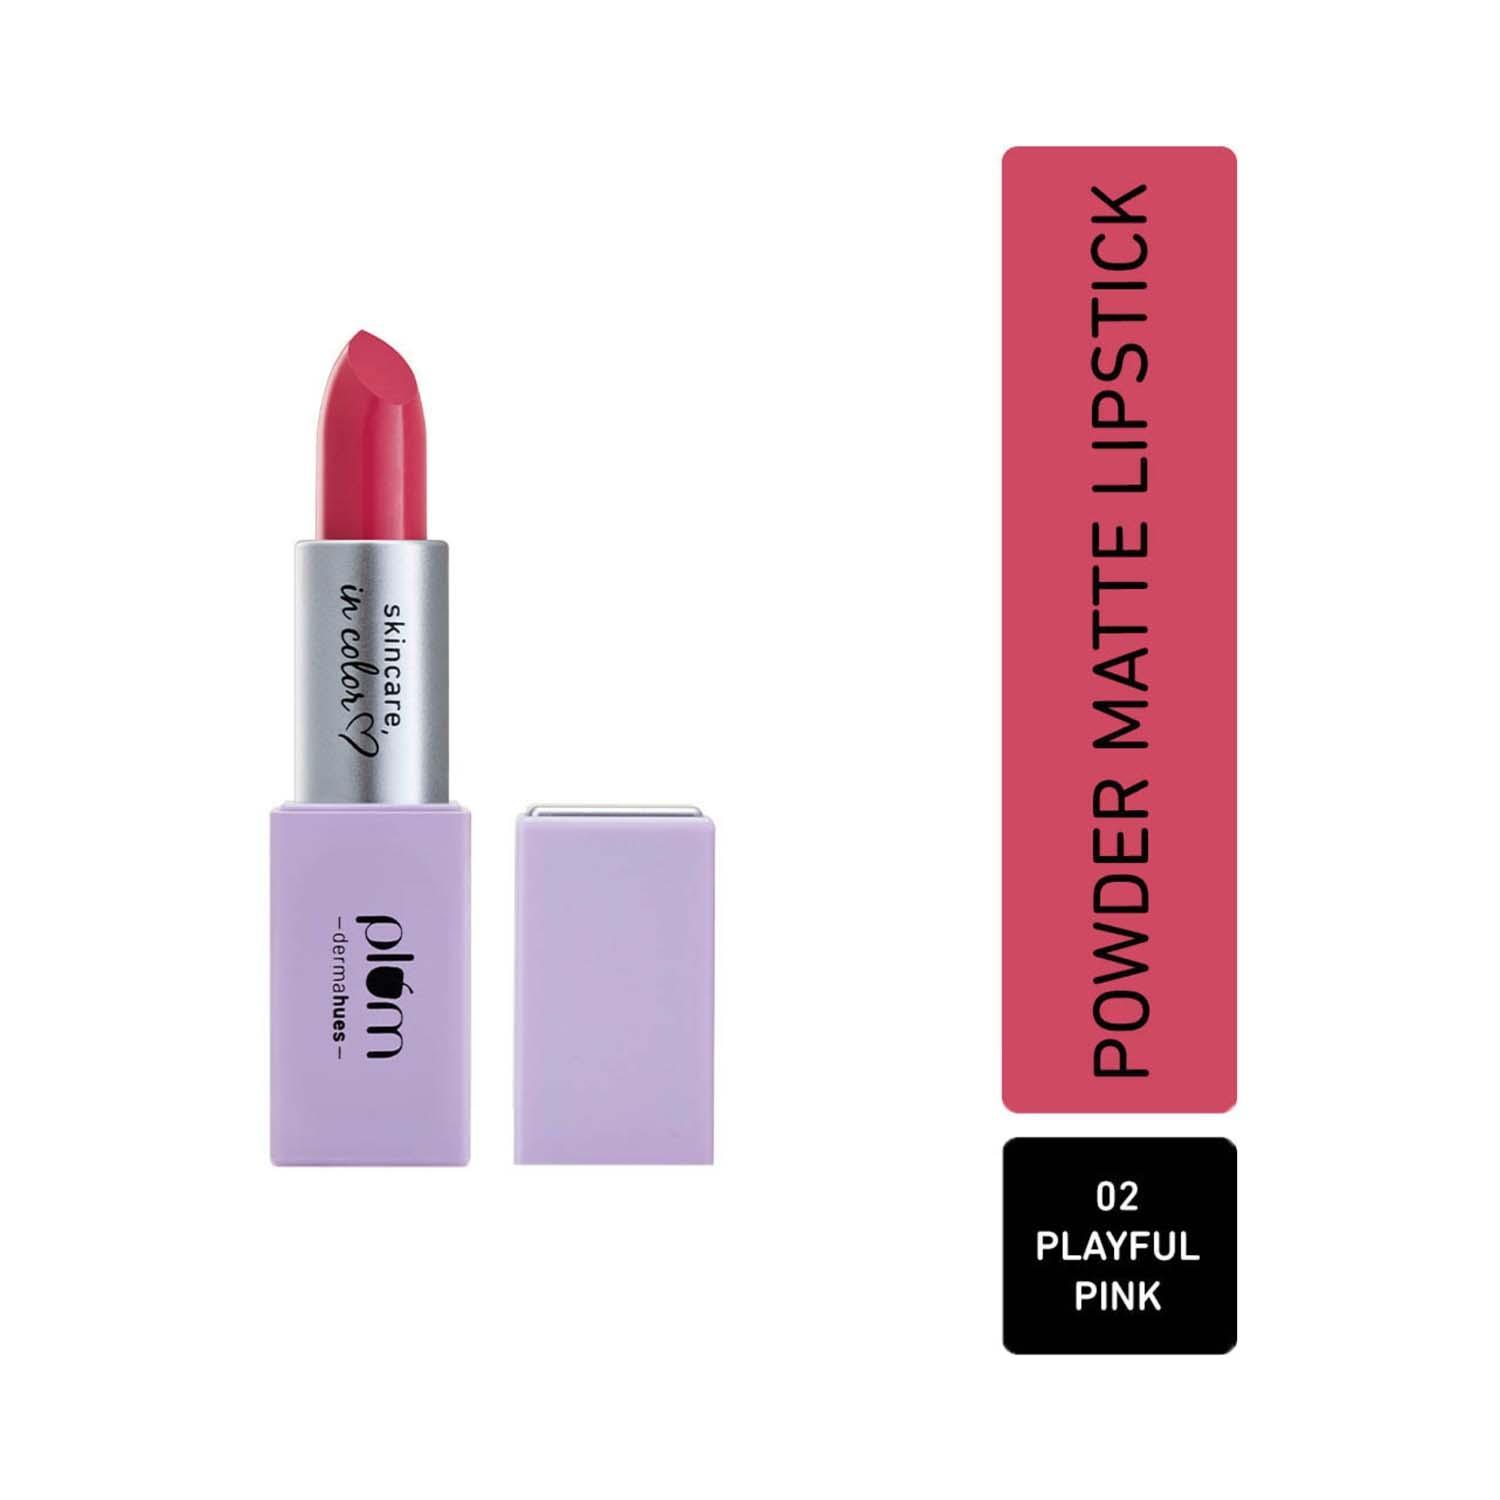 plum velvet haze powder matte lipstick - 02 playful pink (4.2g)